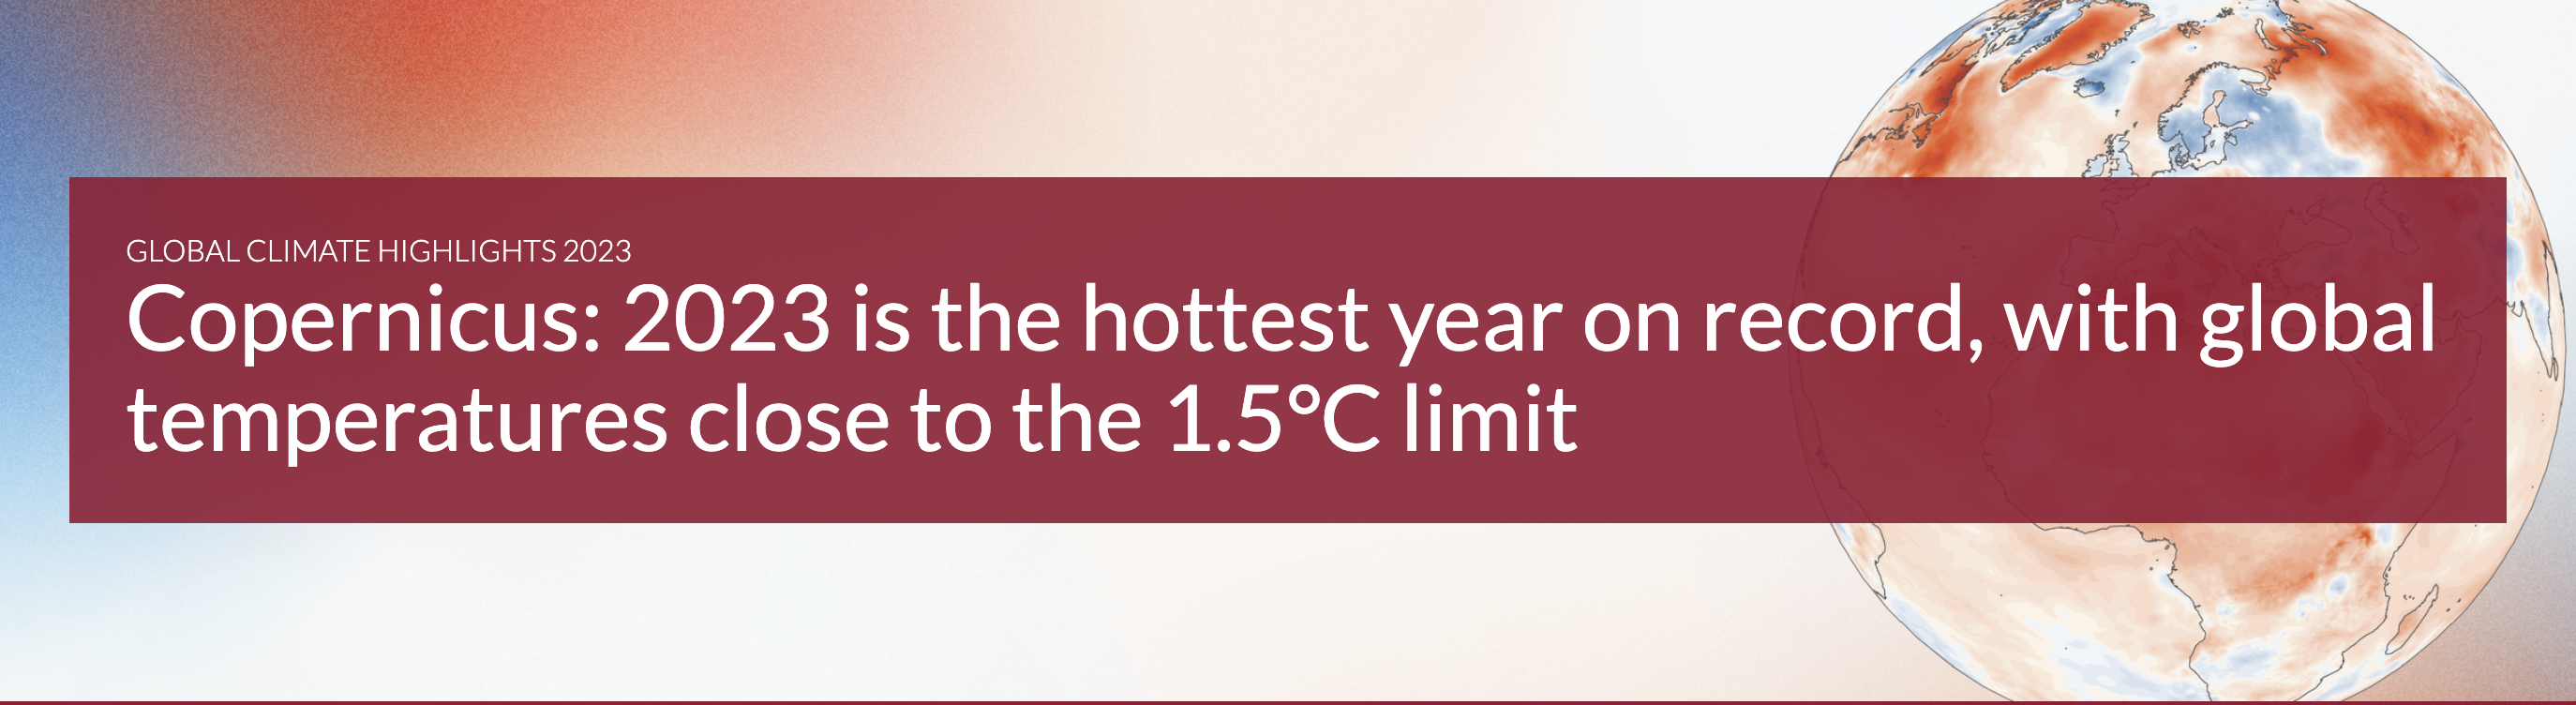 COPERNICUS - Il 2023 è l'anno più caldo mai registrato